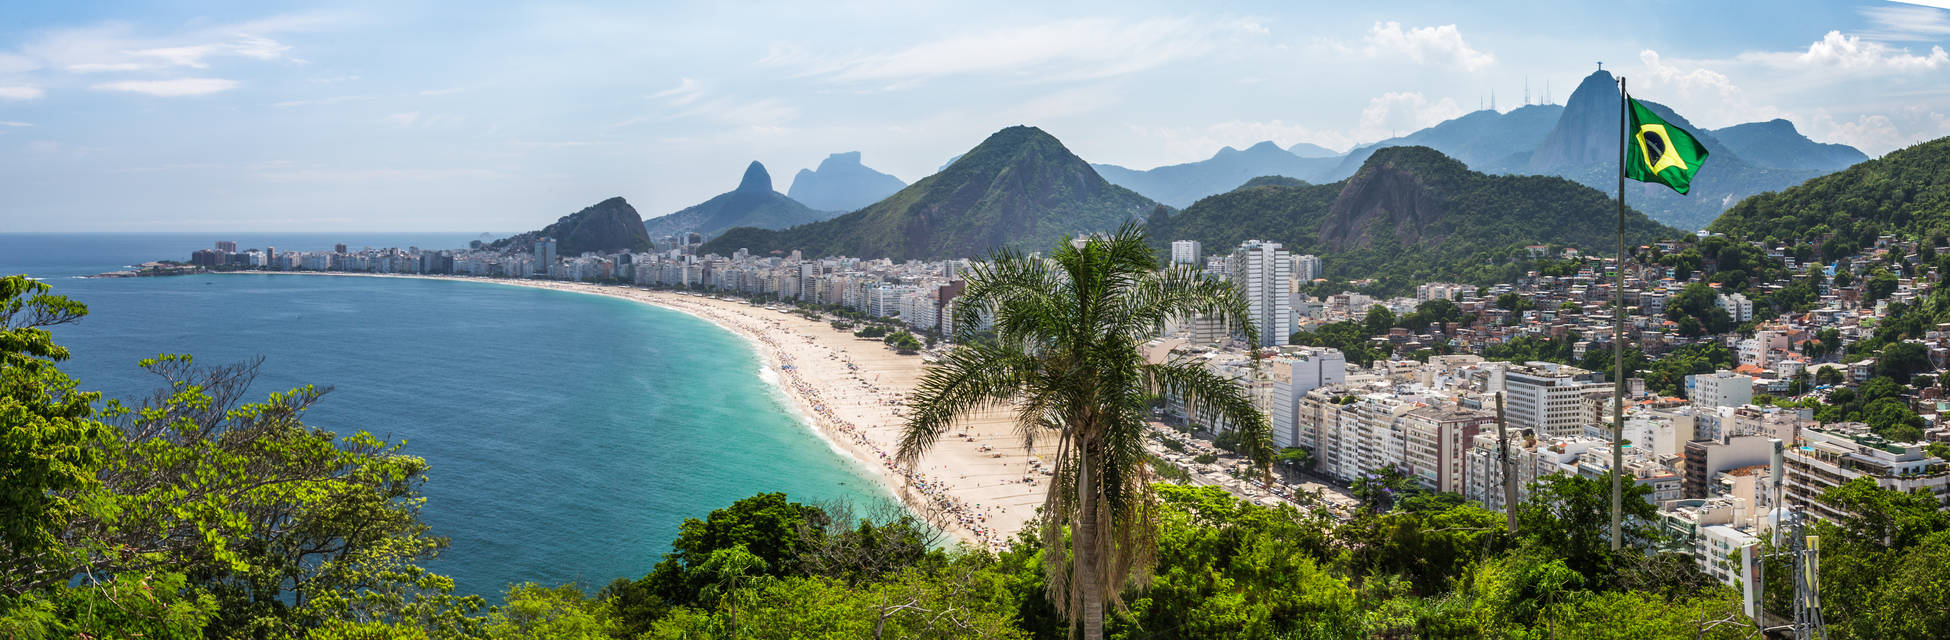 Brazilie-Rio-de-Janeiro-AdobeStock_142327684.jpg